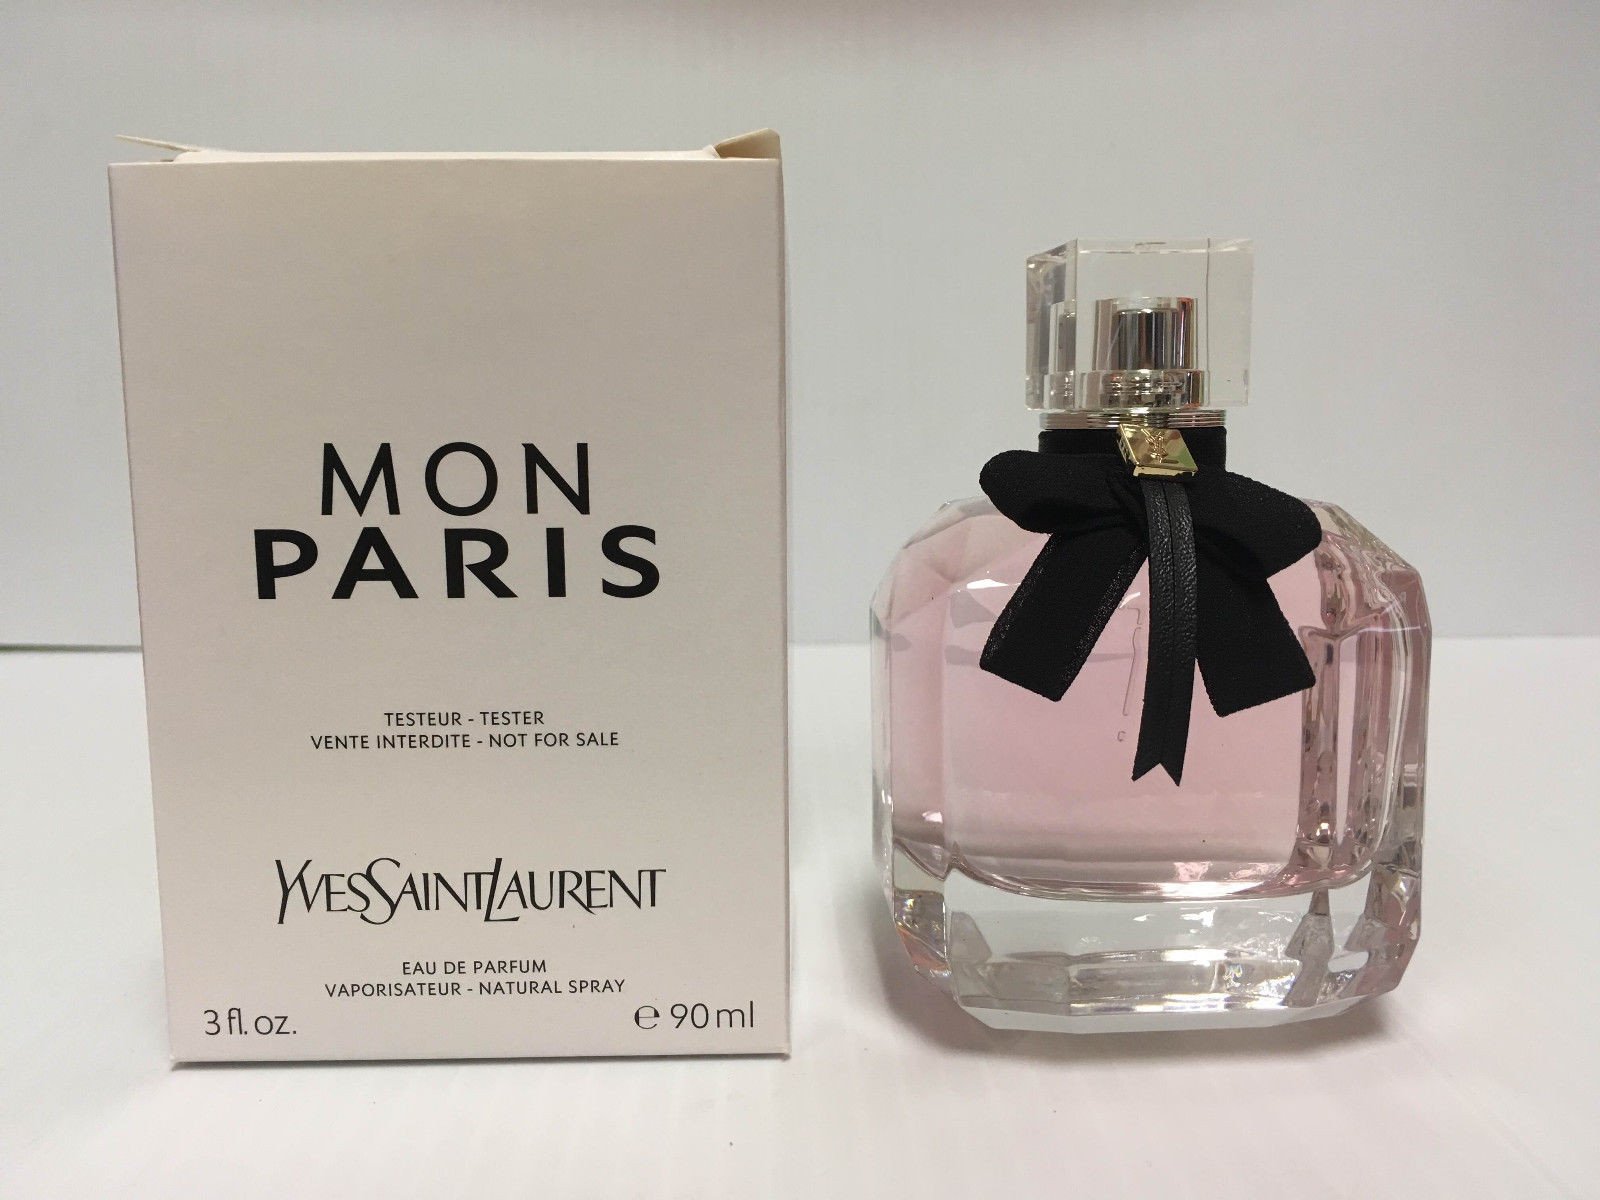 Ysl Mon Paris by Yves Saint Laurent 3 oz. Eau de Parfum